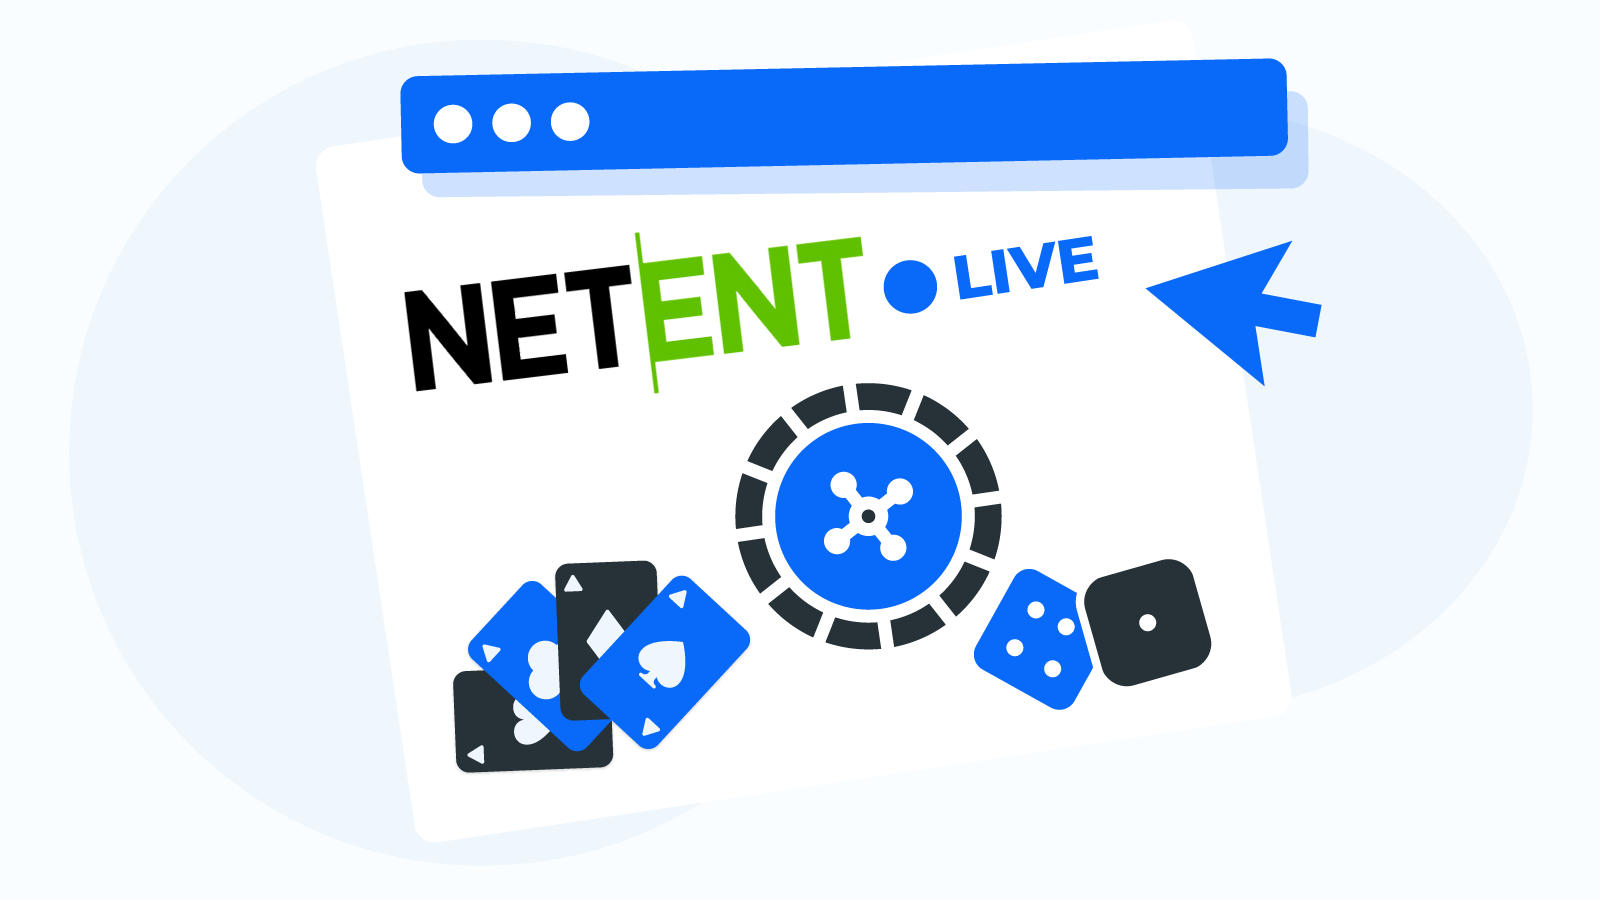 The Live NetEnt Casino UK